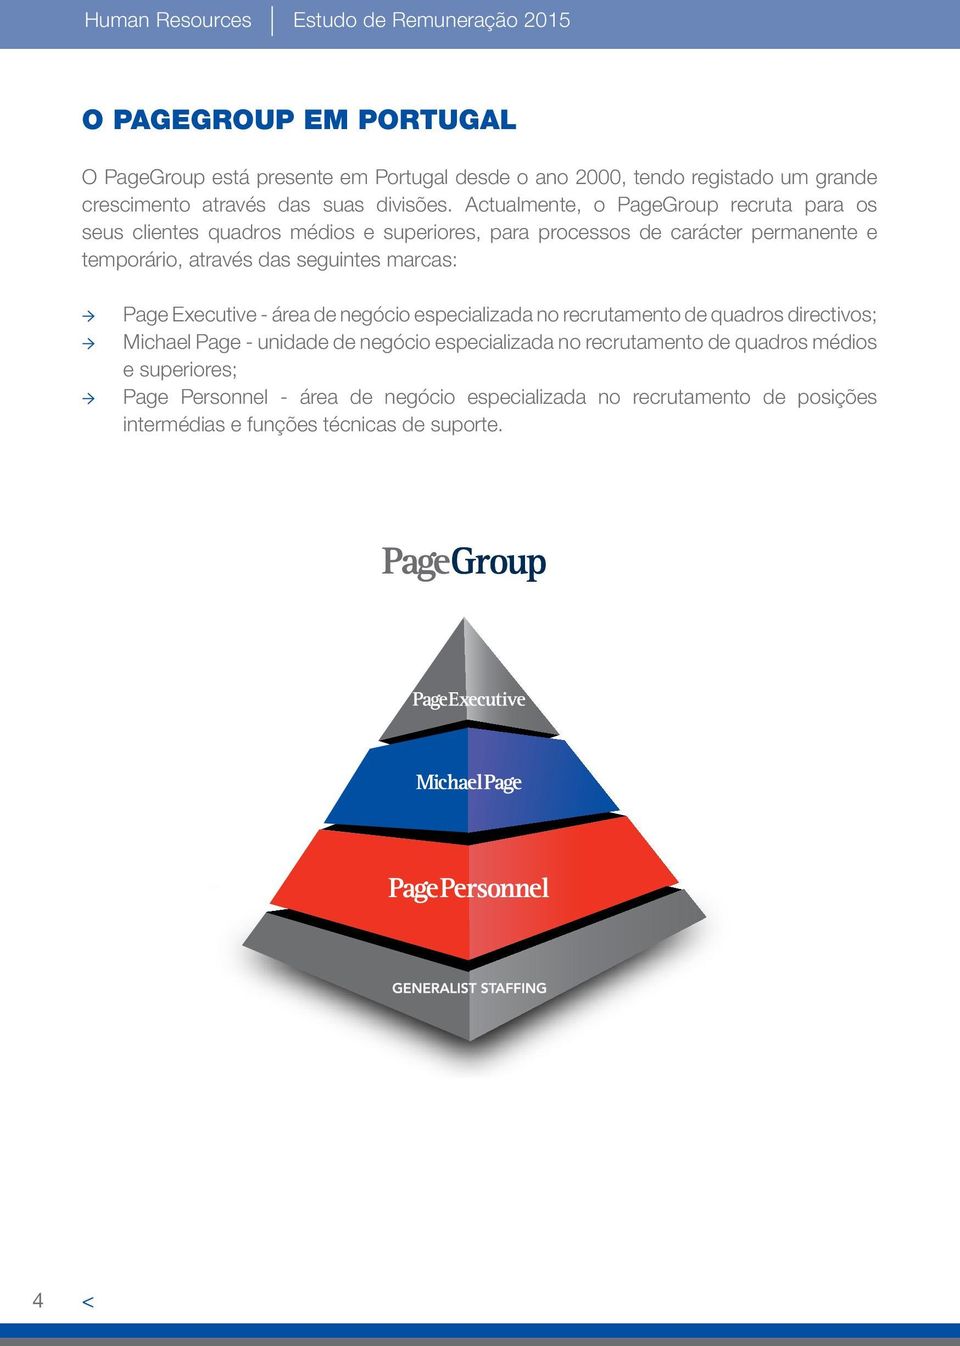 Actualmente, o PageGroup recruta para os seus clientes quadros médios e superiores, para processos de carácter permanente e temporário, através das seguintes